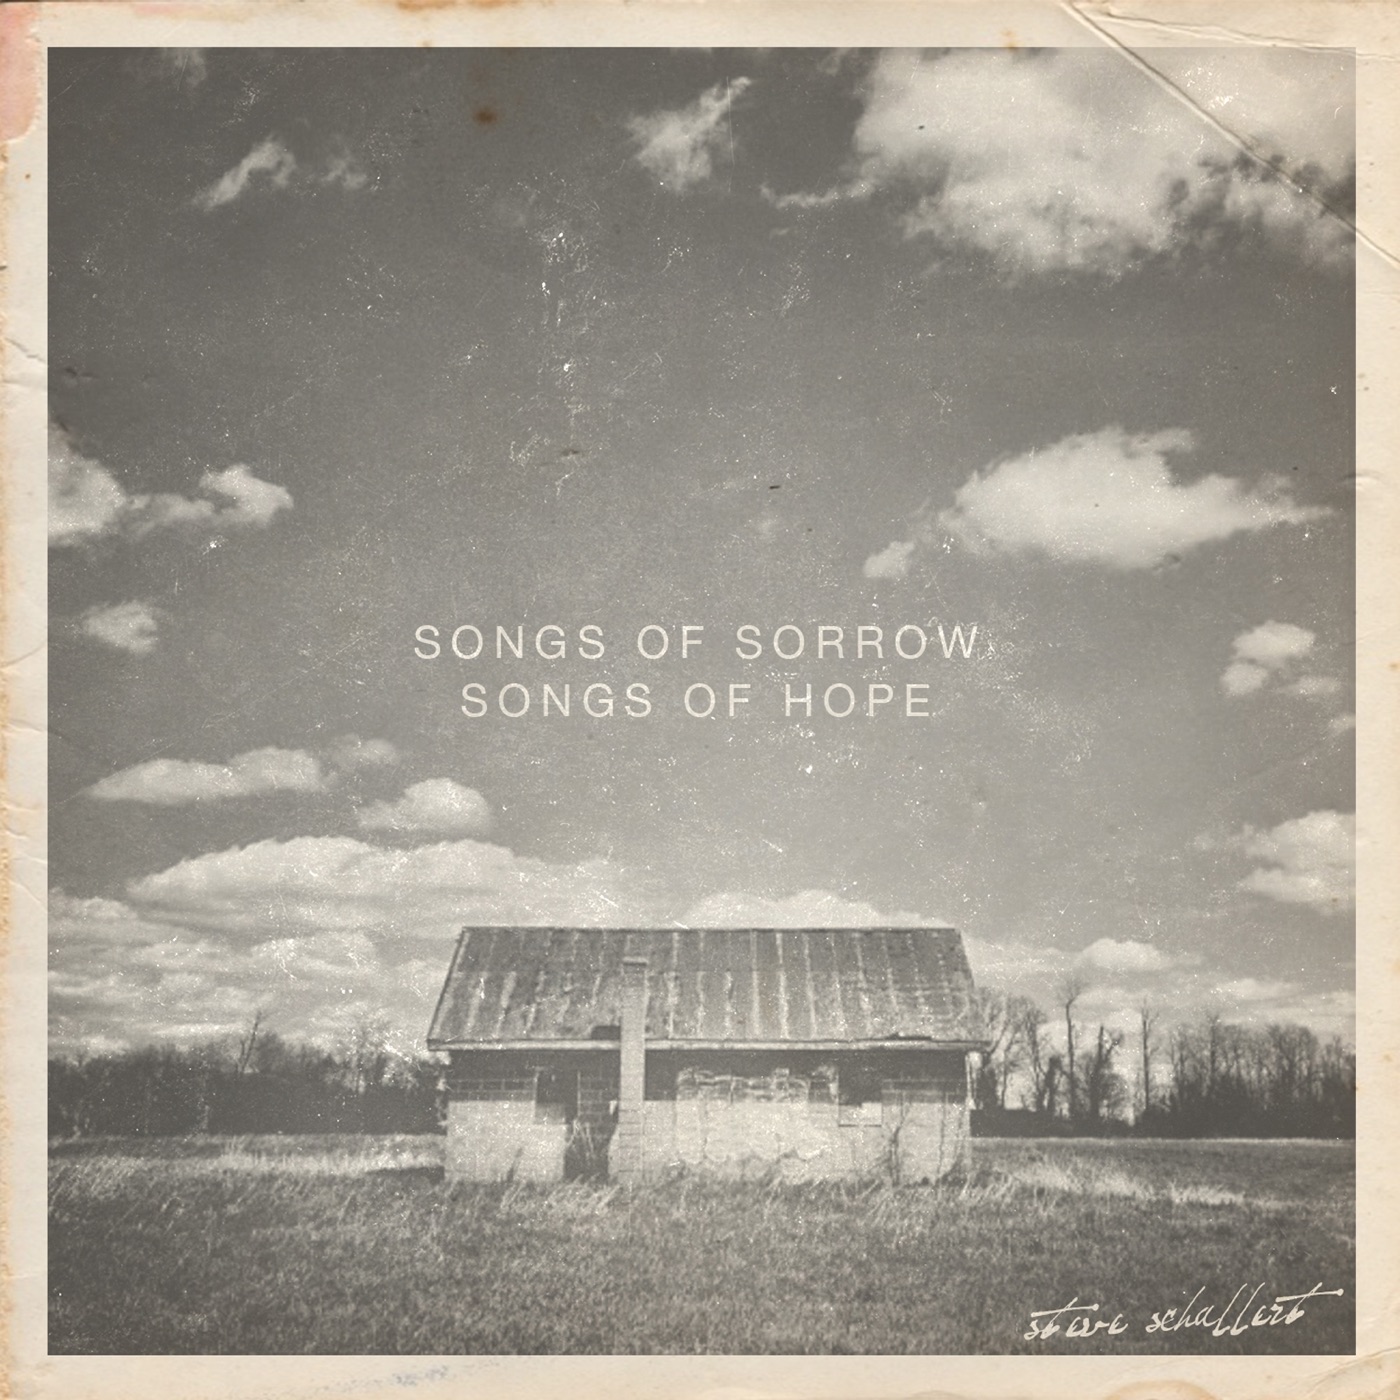 Songs of Sorrow / Songs of Hope by Steve Schallert